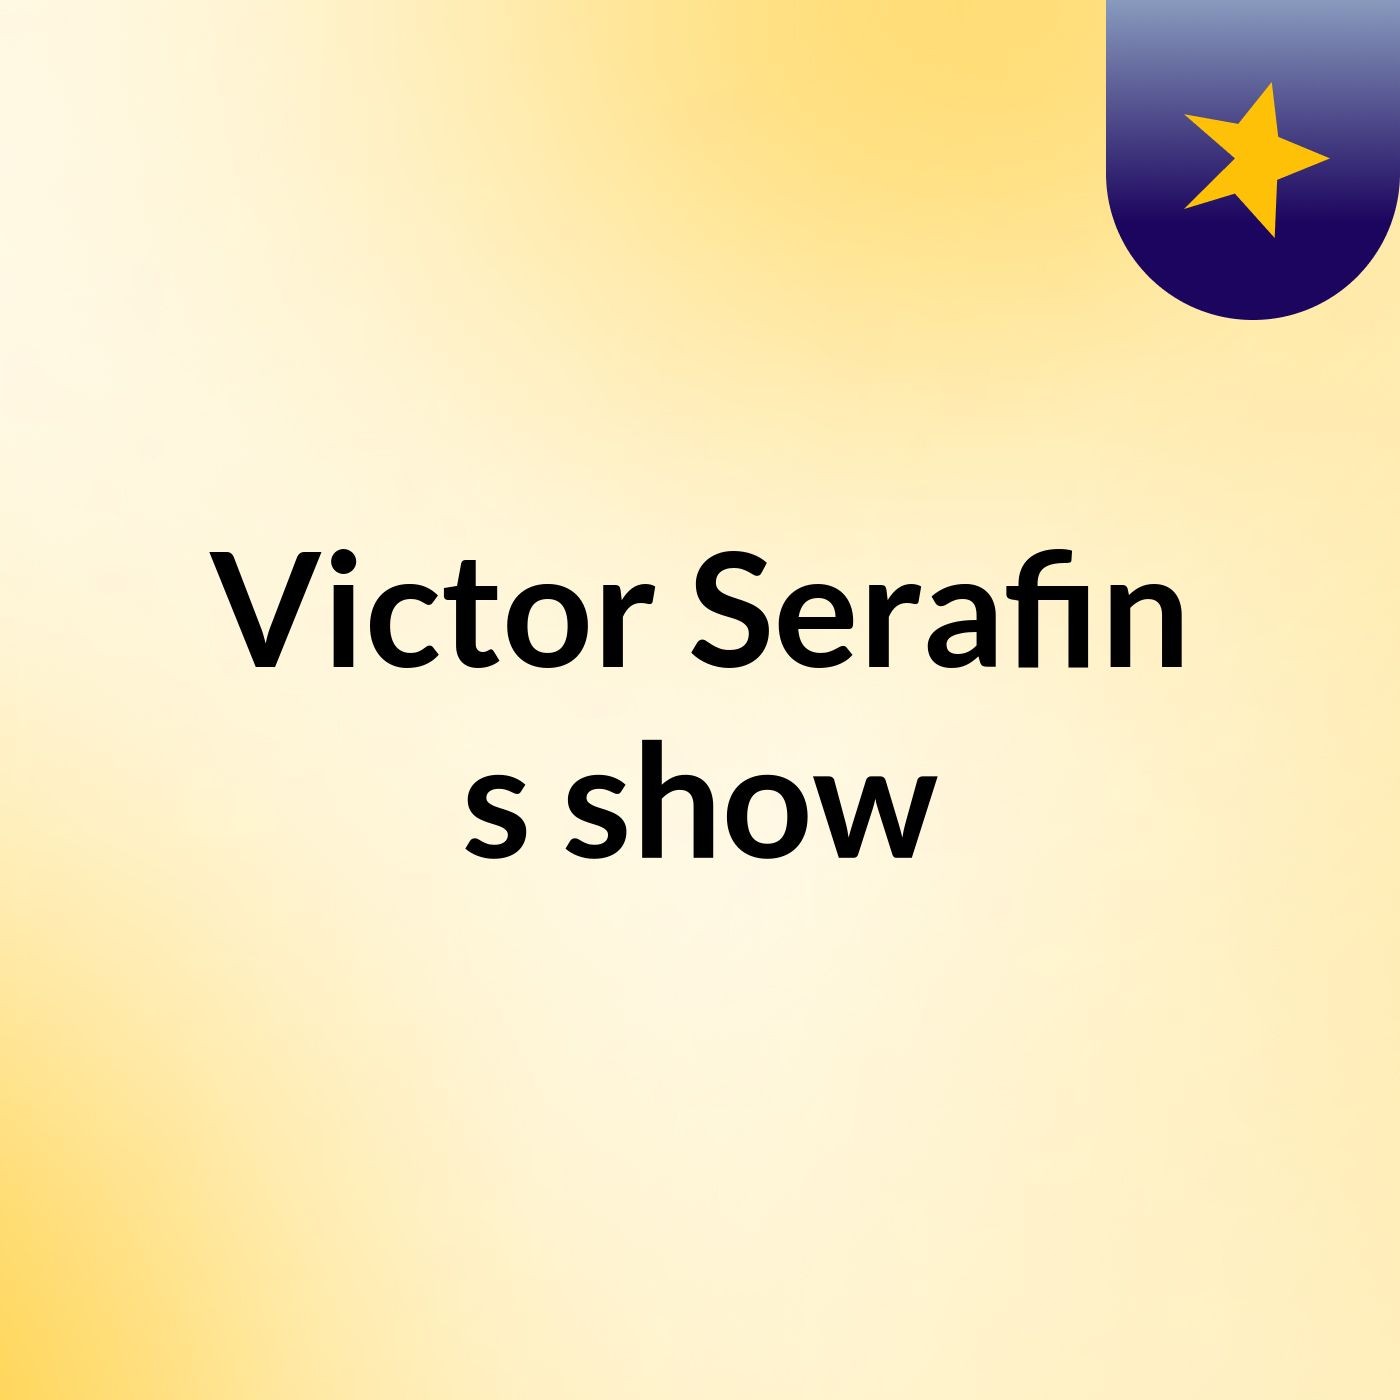 Victor Serafin's show